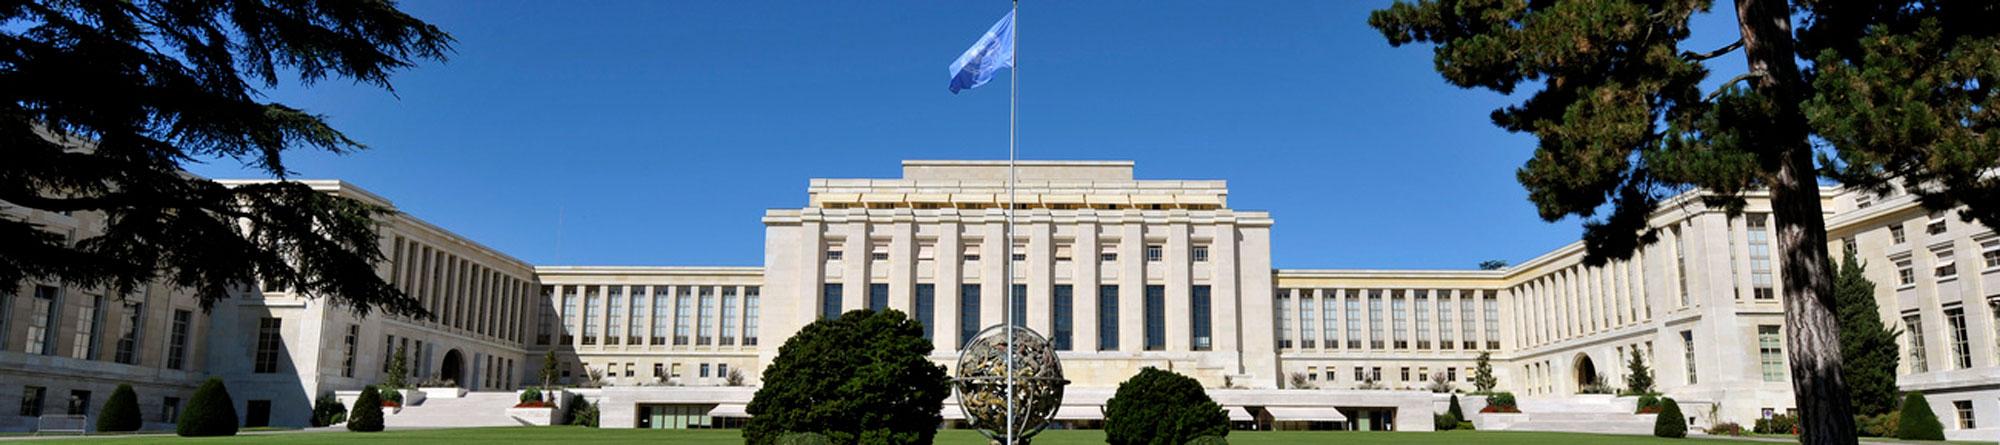 Le bâtiment principal des Nations Unies, avec sa fameuse sphère [Keystone - Marcel Trezzini]